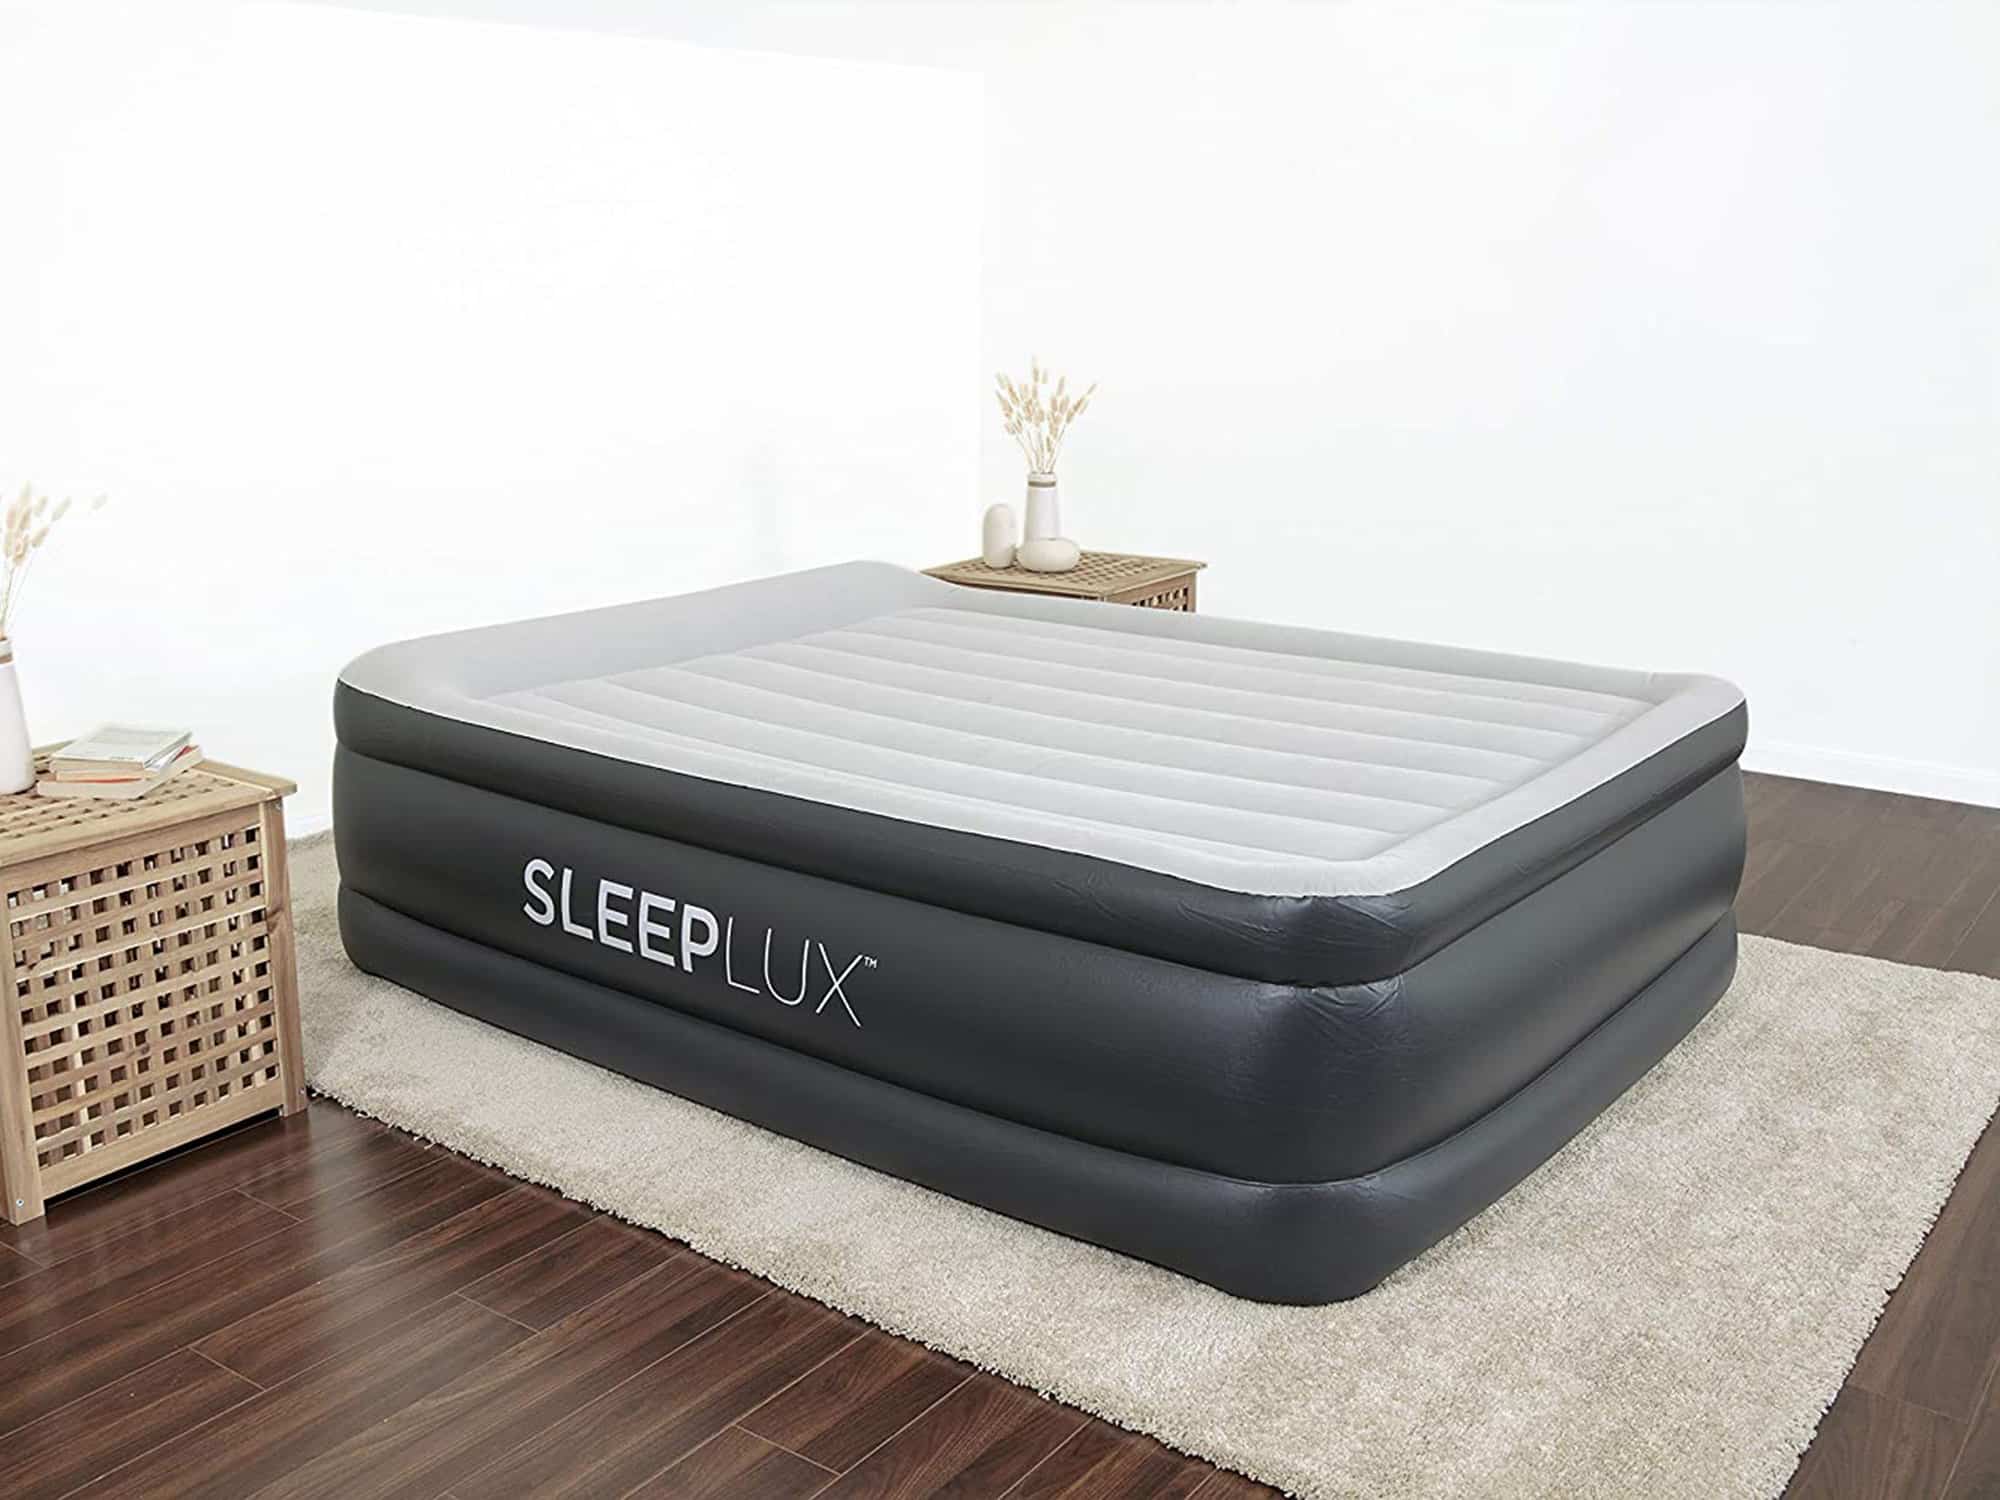 SleepLux air mattress